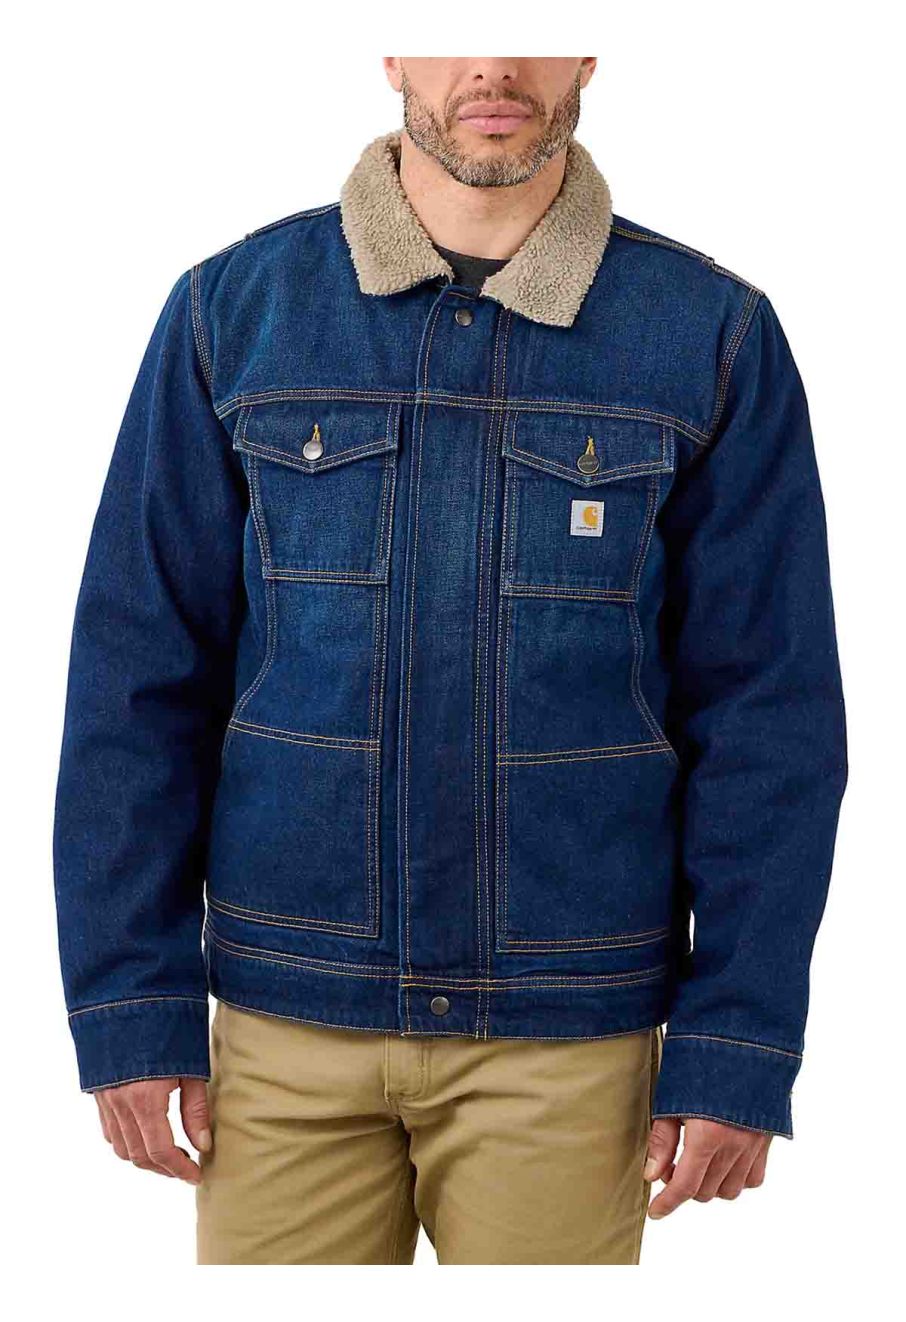 105478 Work jacket Denim Sherpa Lined Carhartt Beech H87